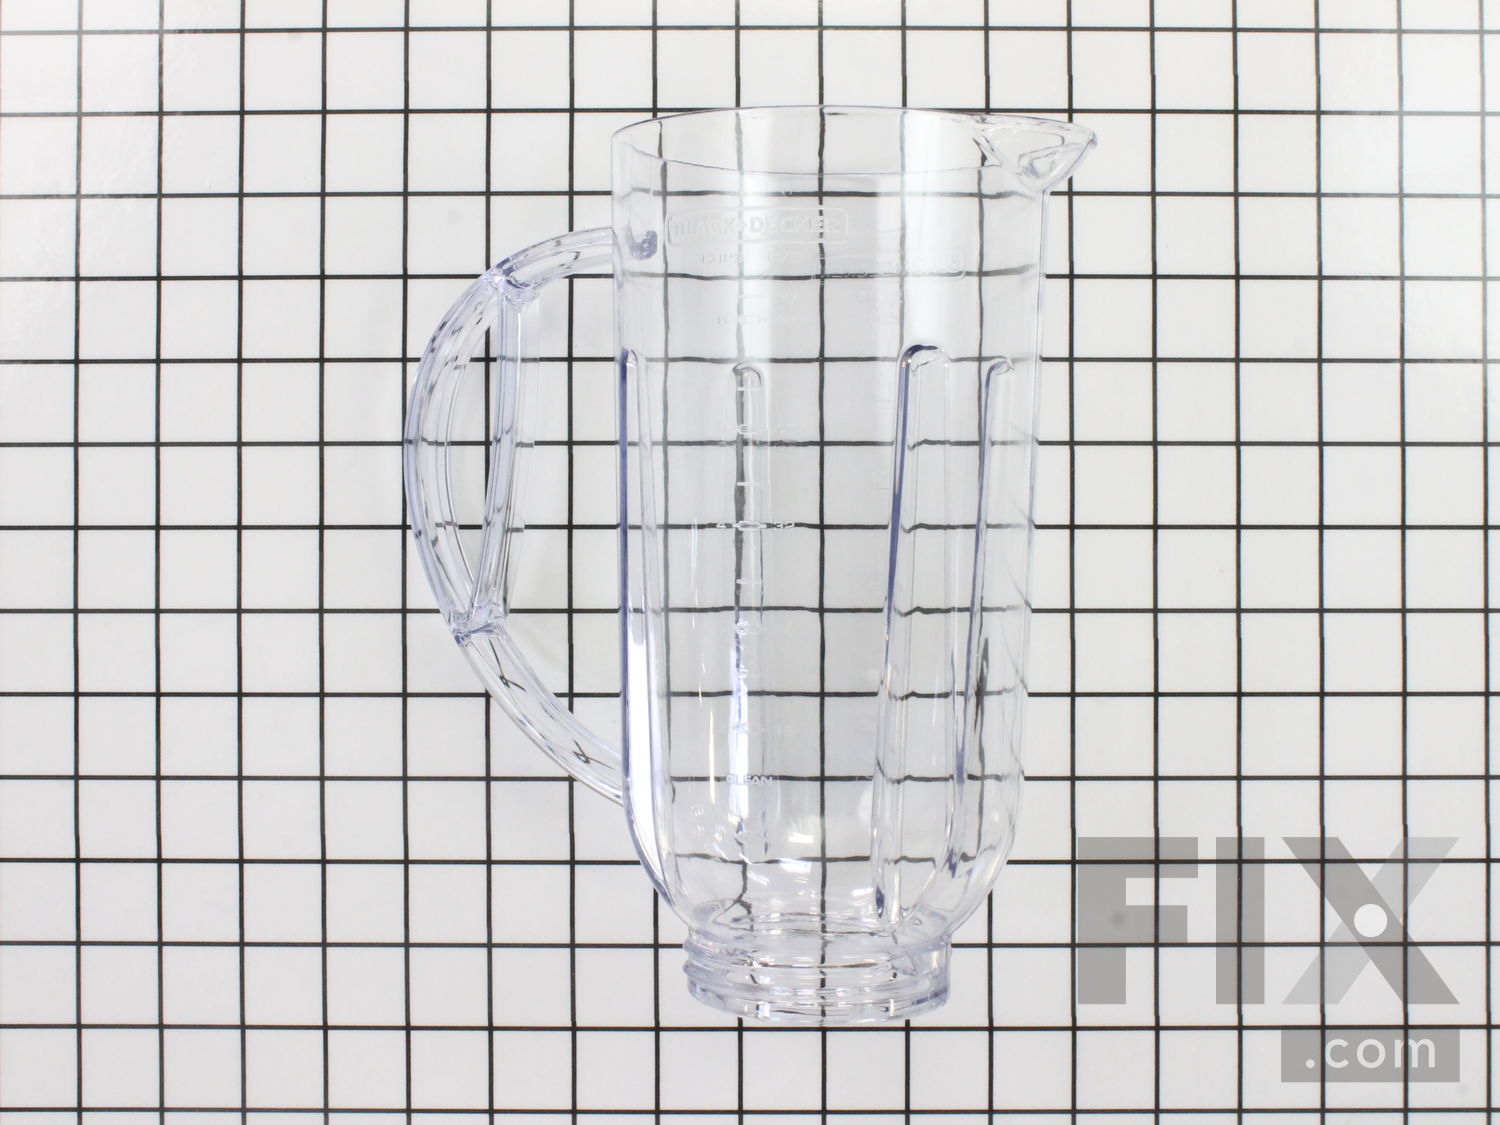 Black + Decker Blender Plastic Jar for Sale in Fort Lauderdale, FL